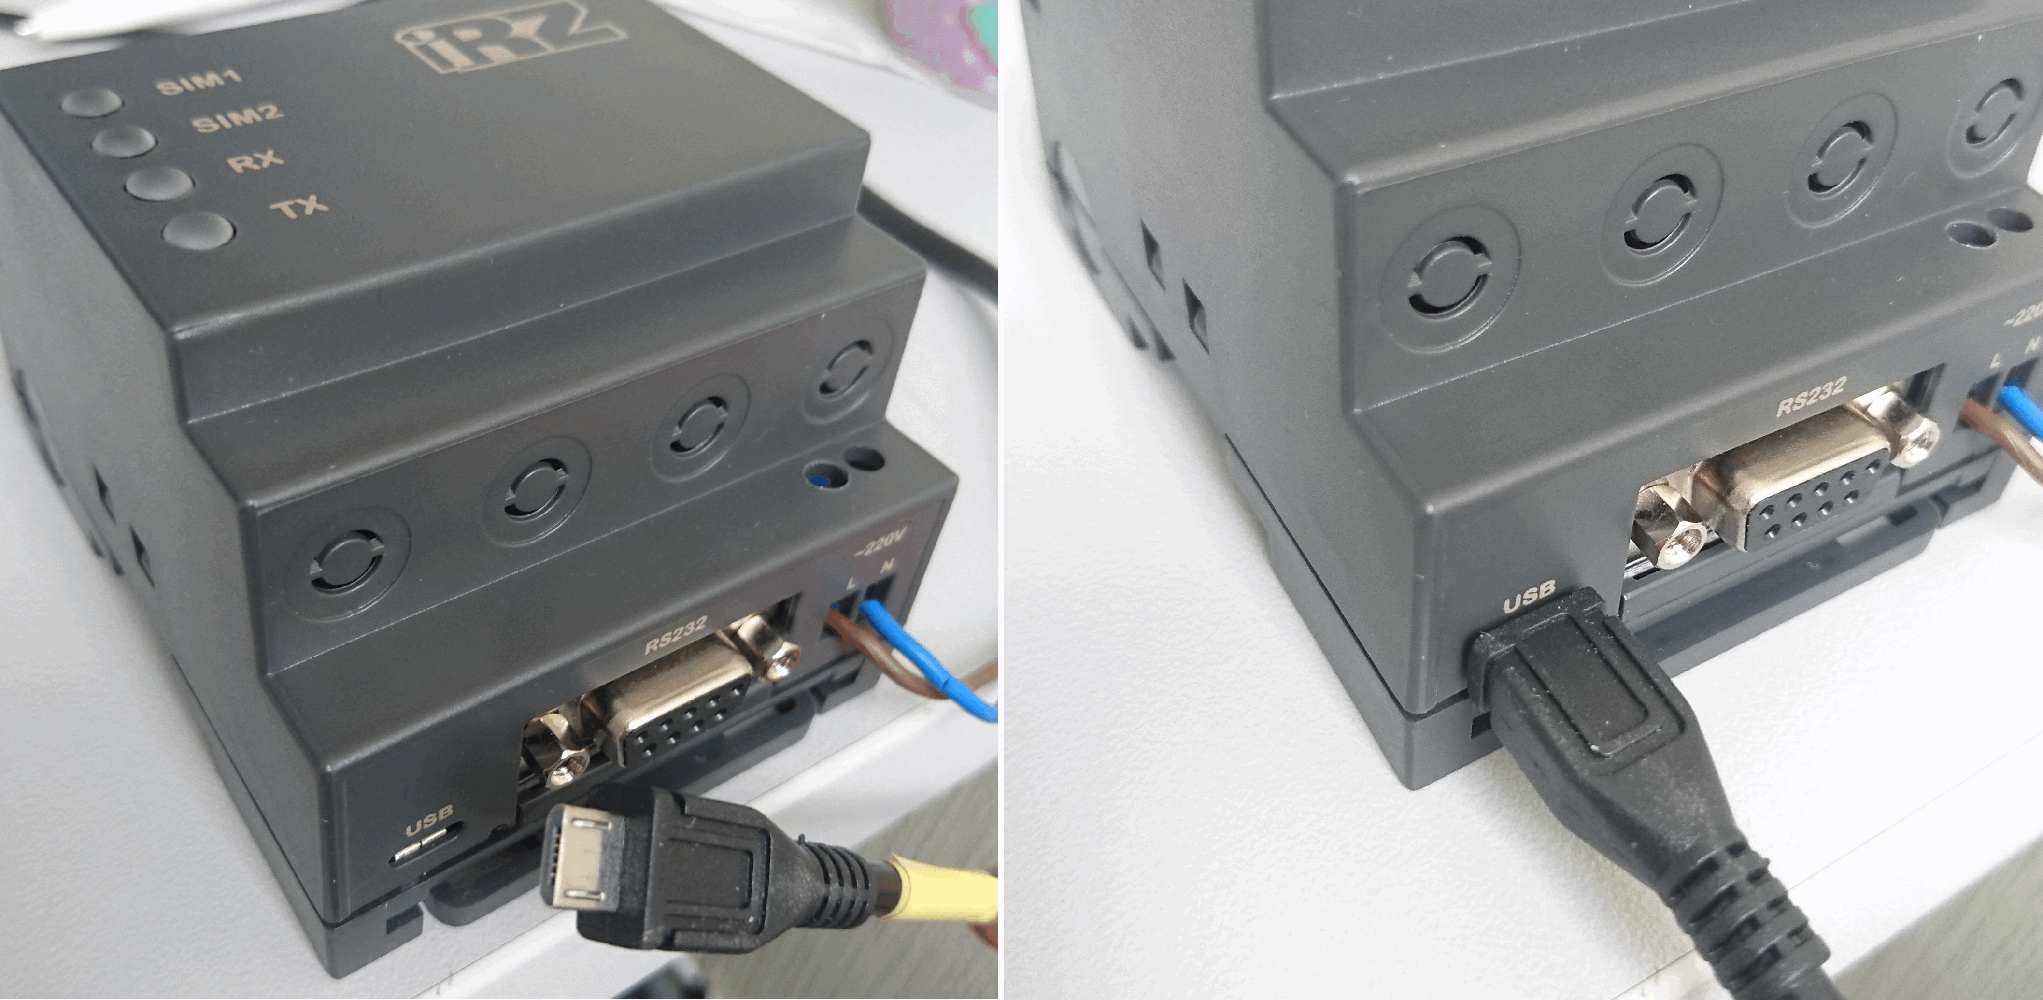 Podklyuchit' modem k komp'yuteru s pomoshch'yu USB kabelya